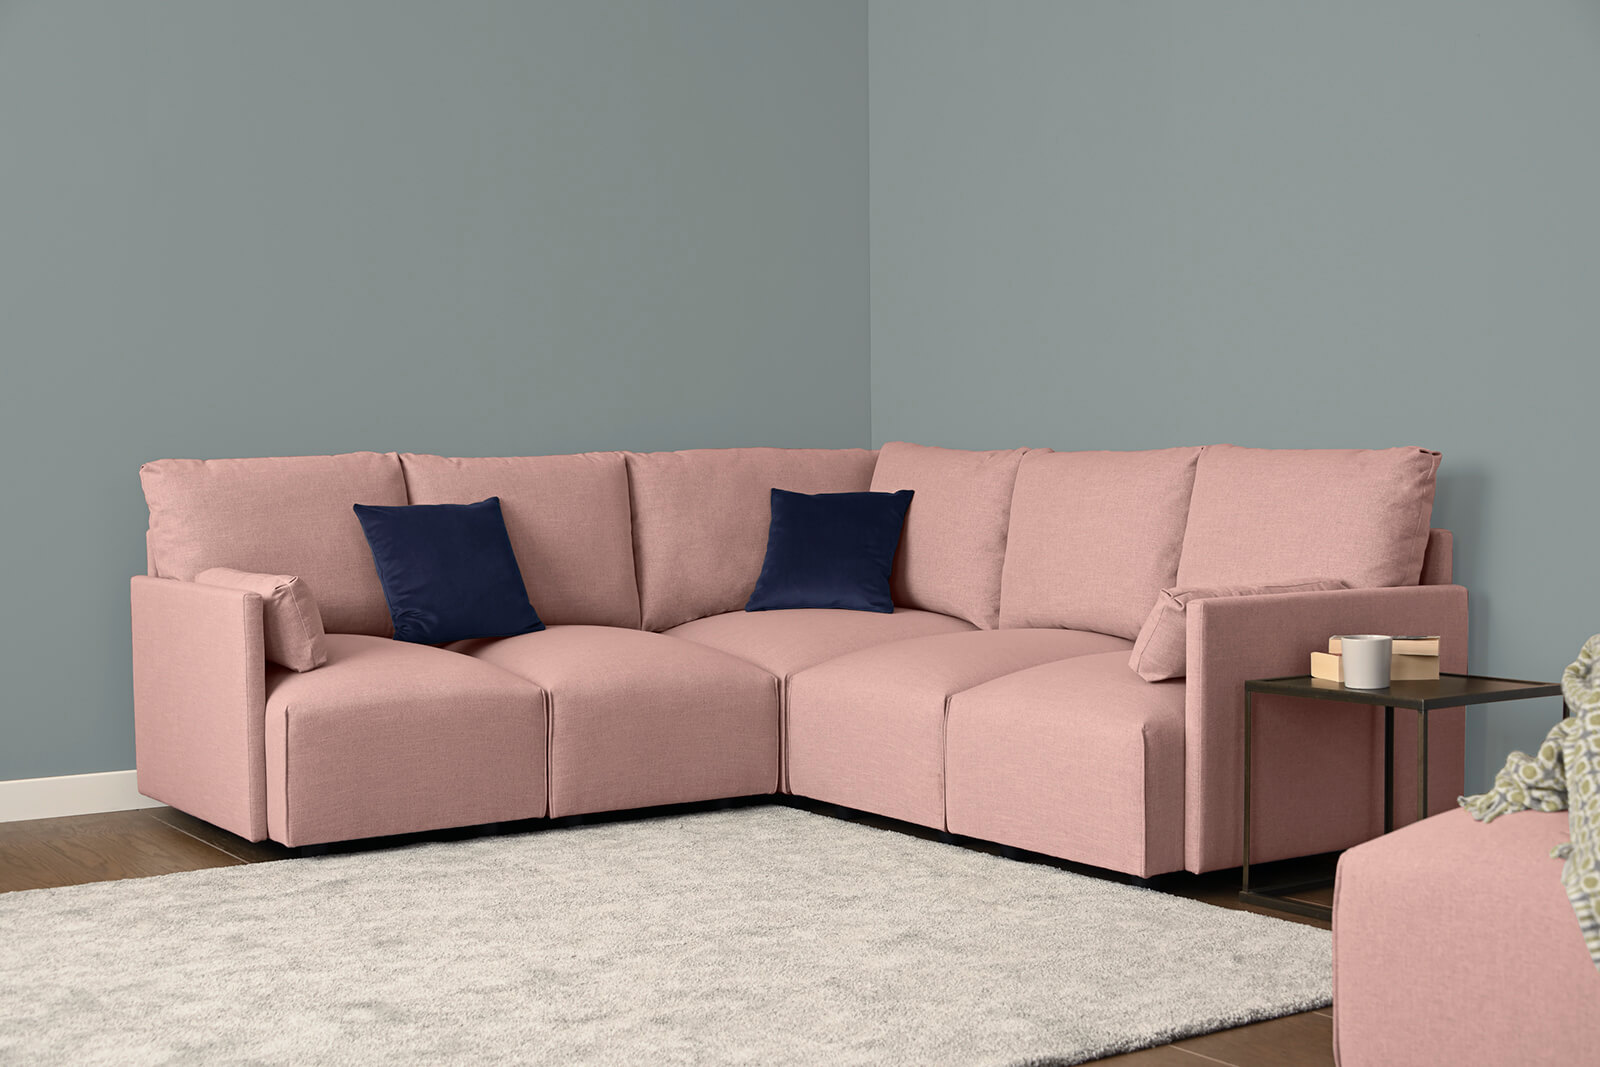 HB04-medium-corner-sofa-3q-rosewater-3x3-lifestyle